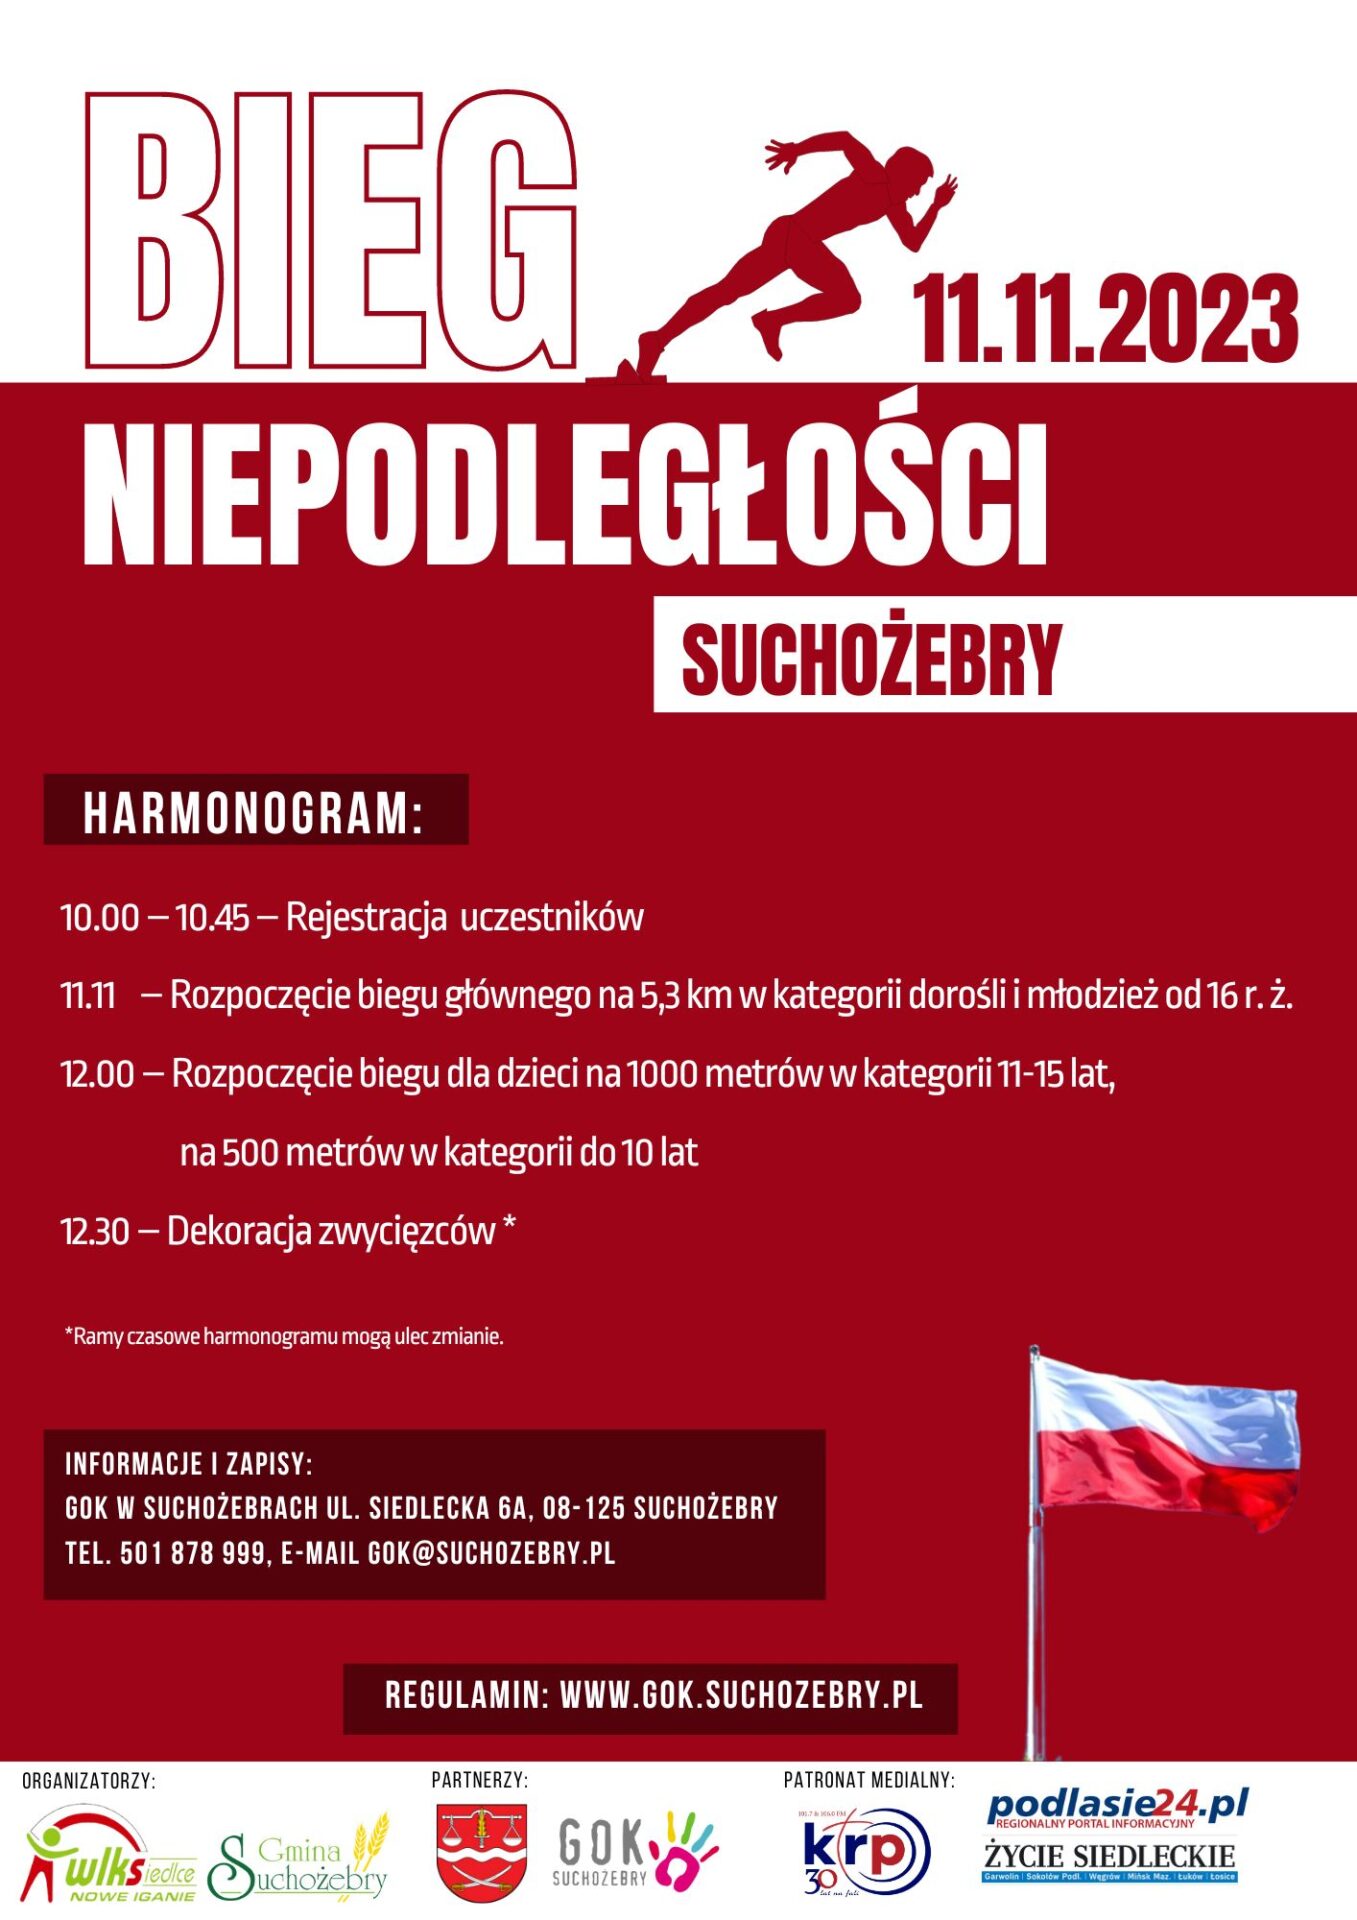 Plakat w kolorystyce czerwono-białej informujacy o biegu niepodległości w Suchożebrach 11 listopada 2023 r.